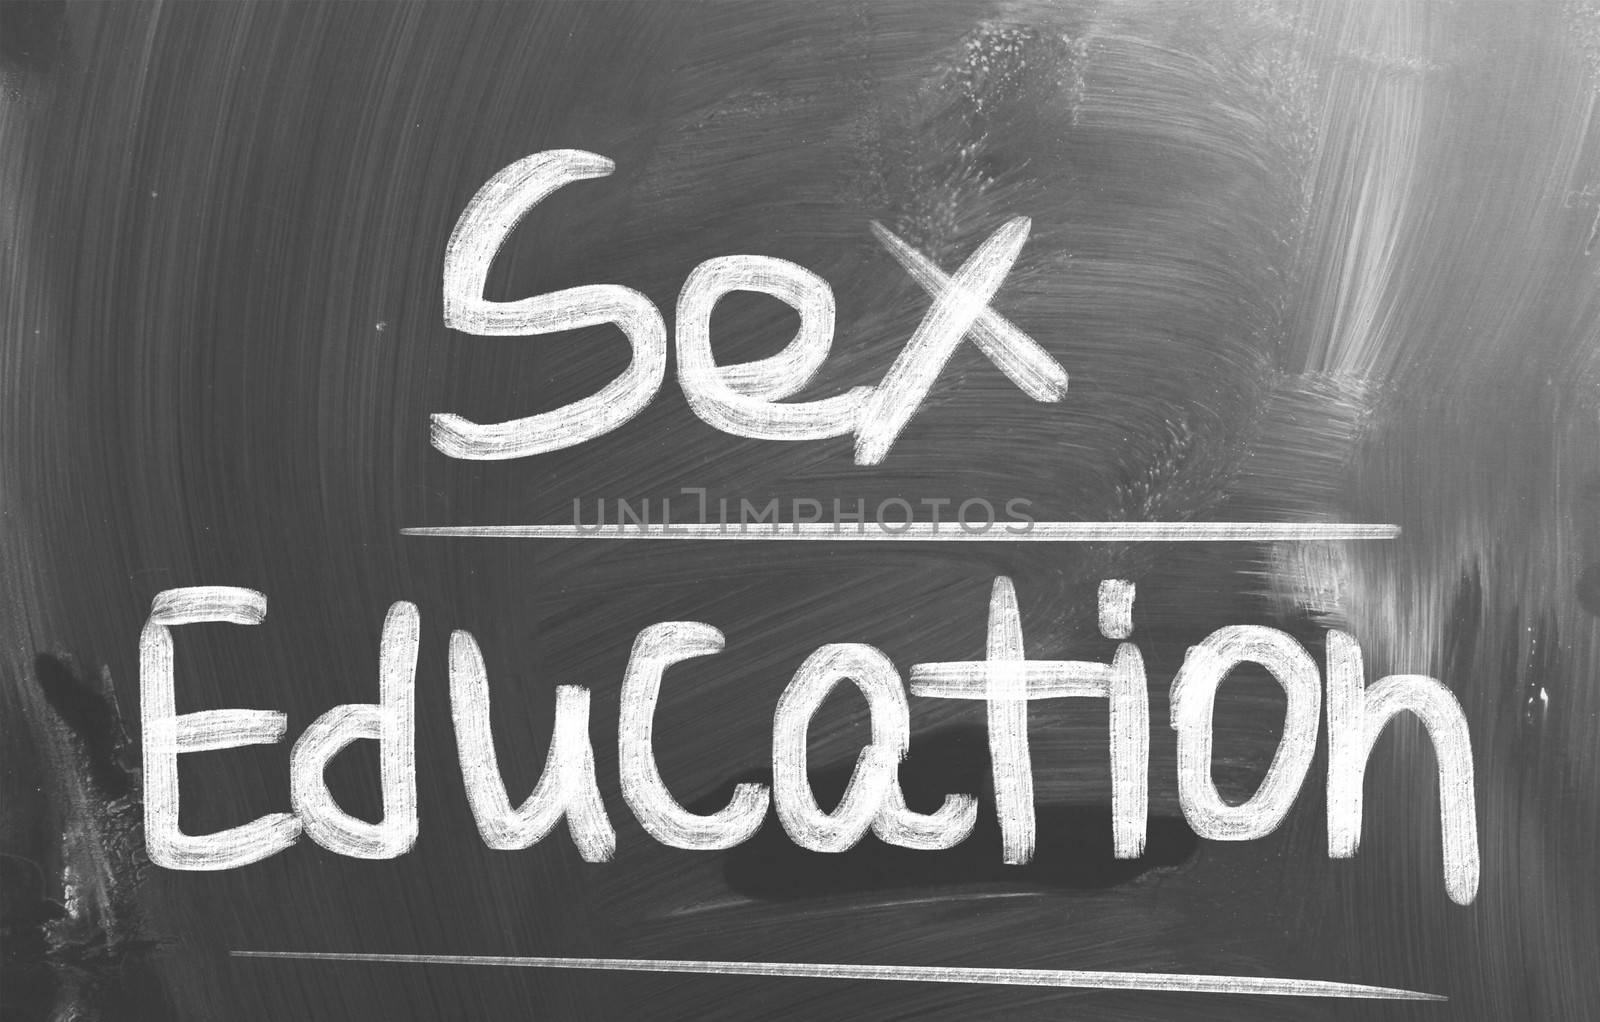 Sex Education Concept